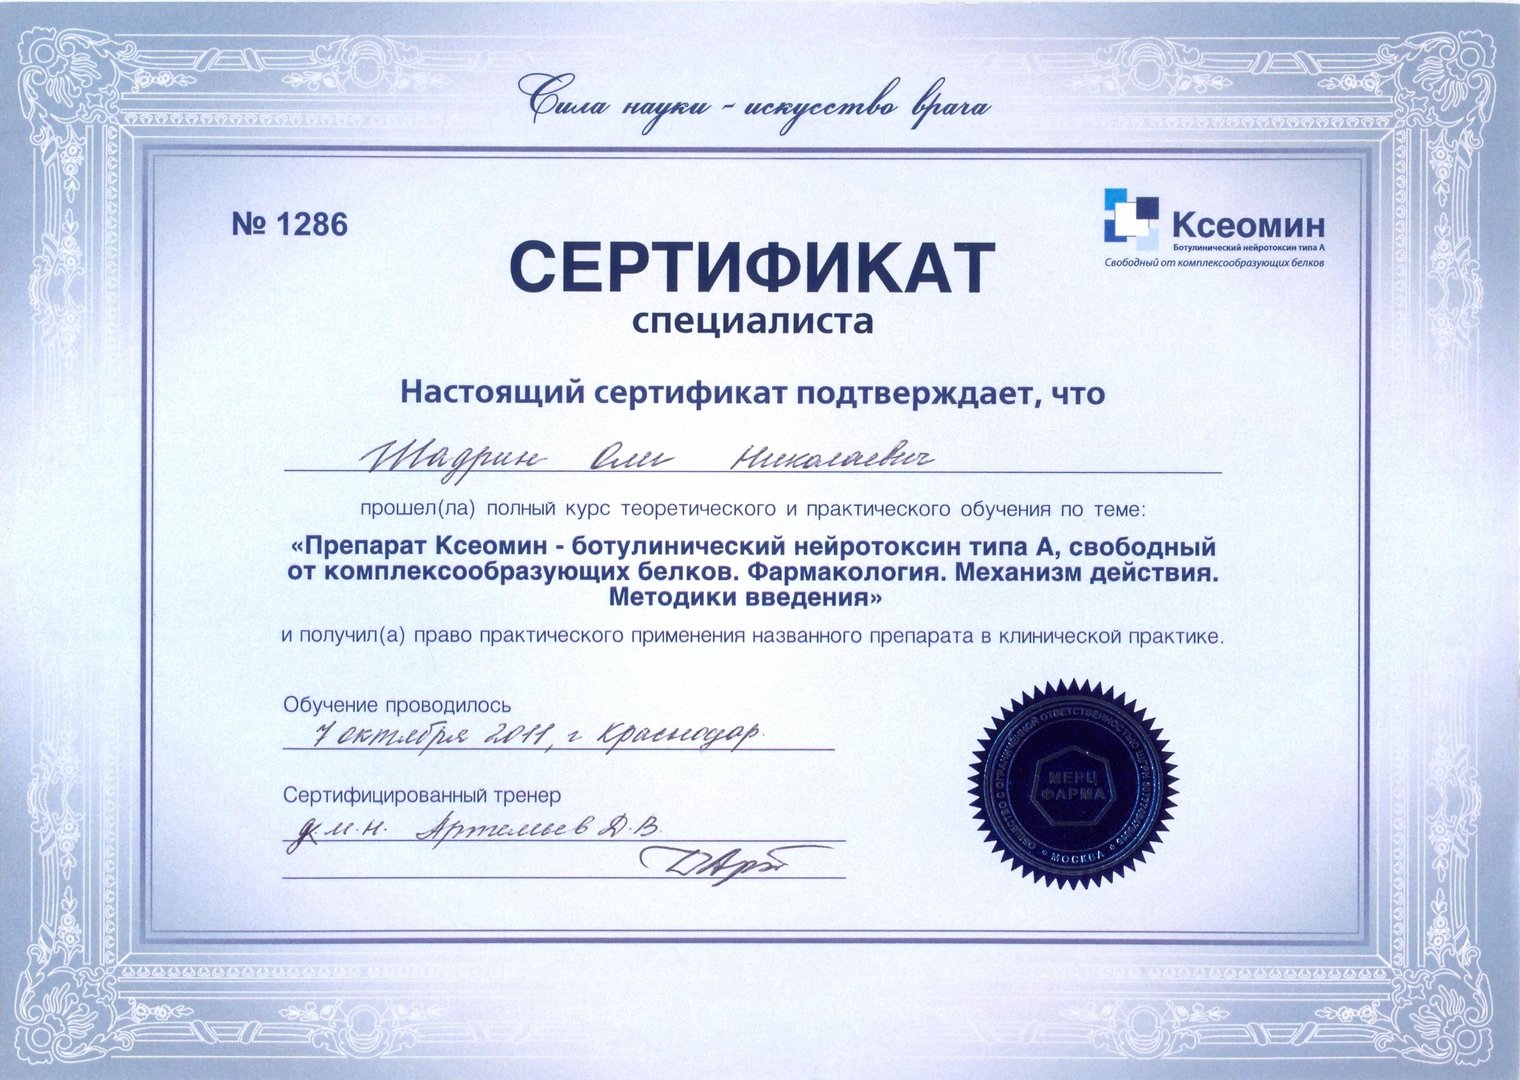 Сертификат на право применения препарата Ксеомин